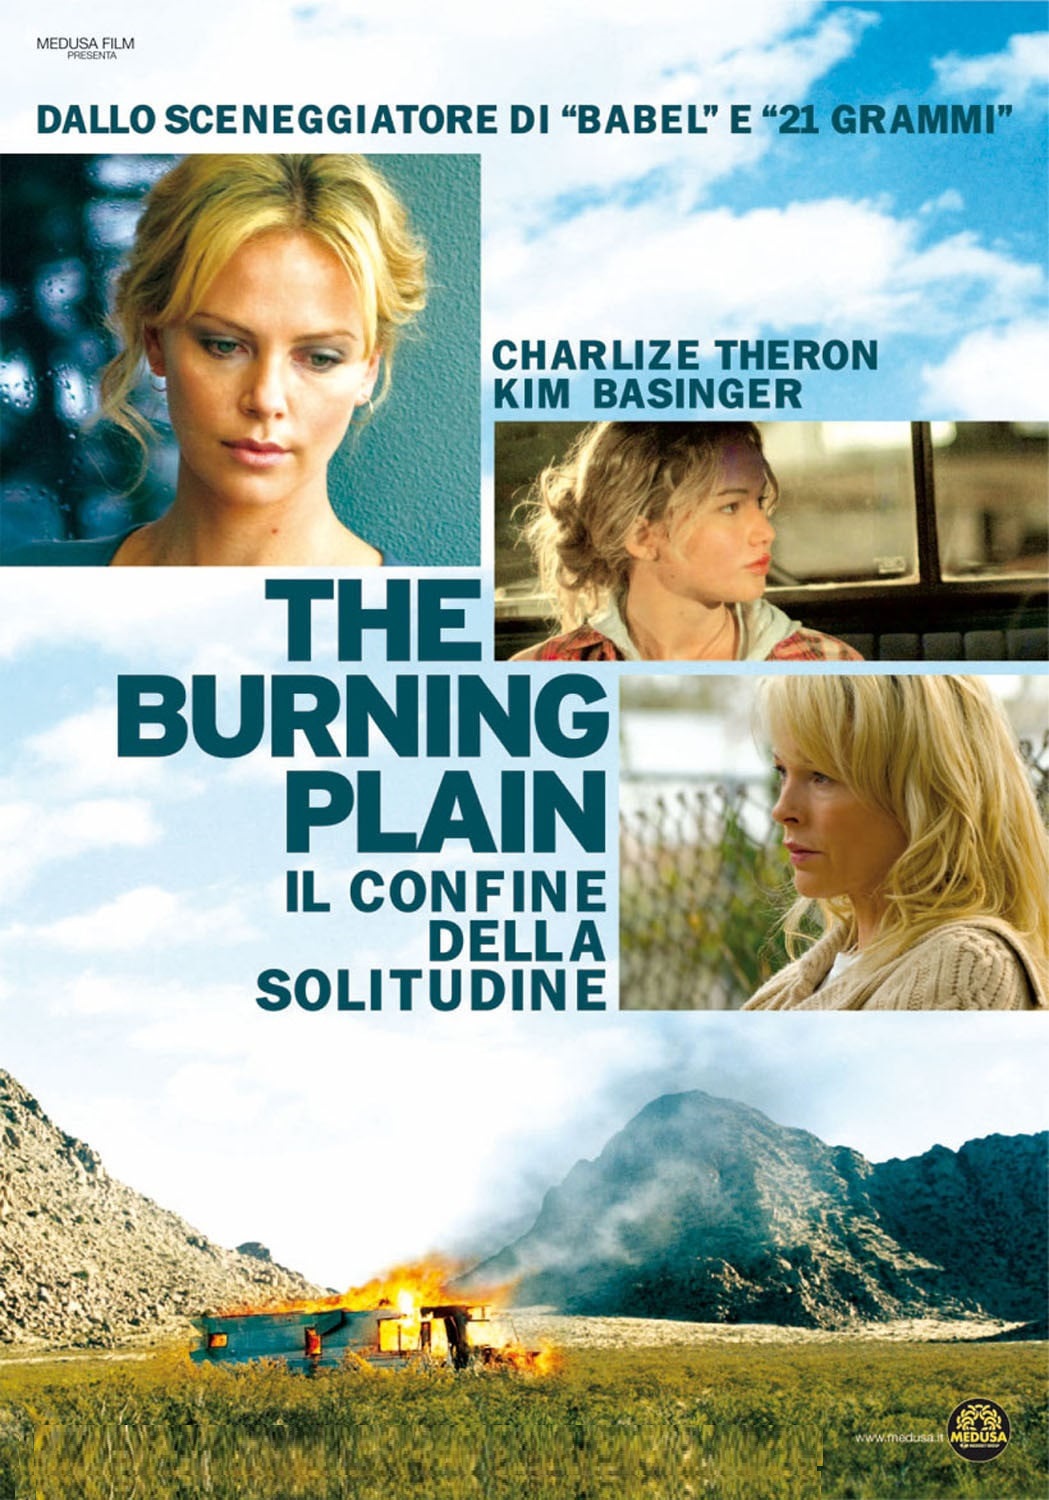 The Burning Plain – Il confine della solitudine [HD] (2008)